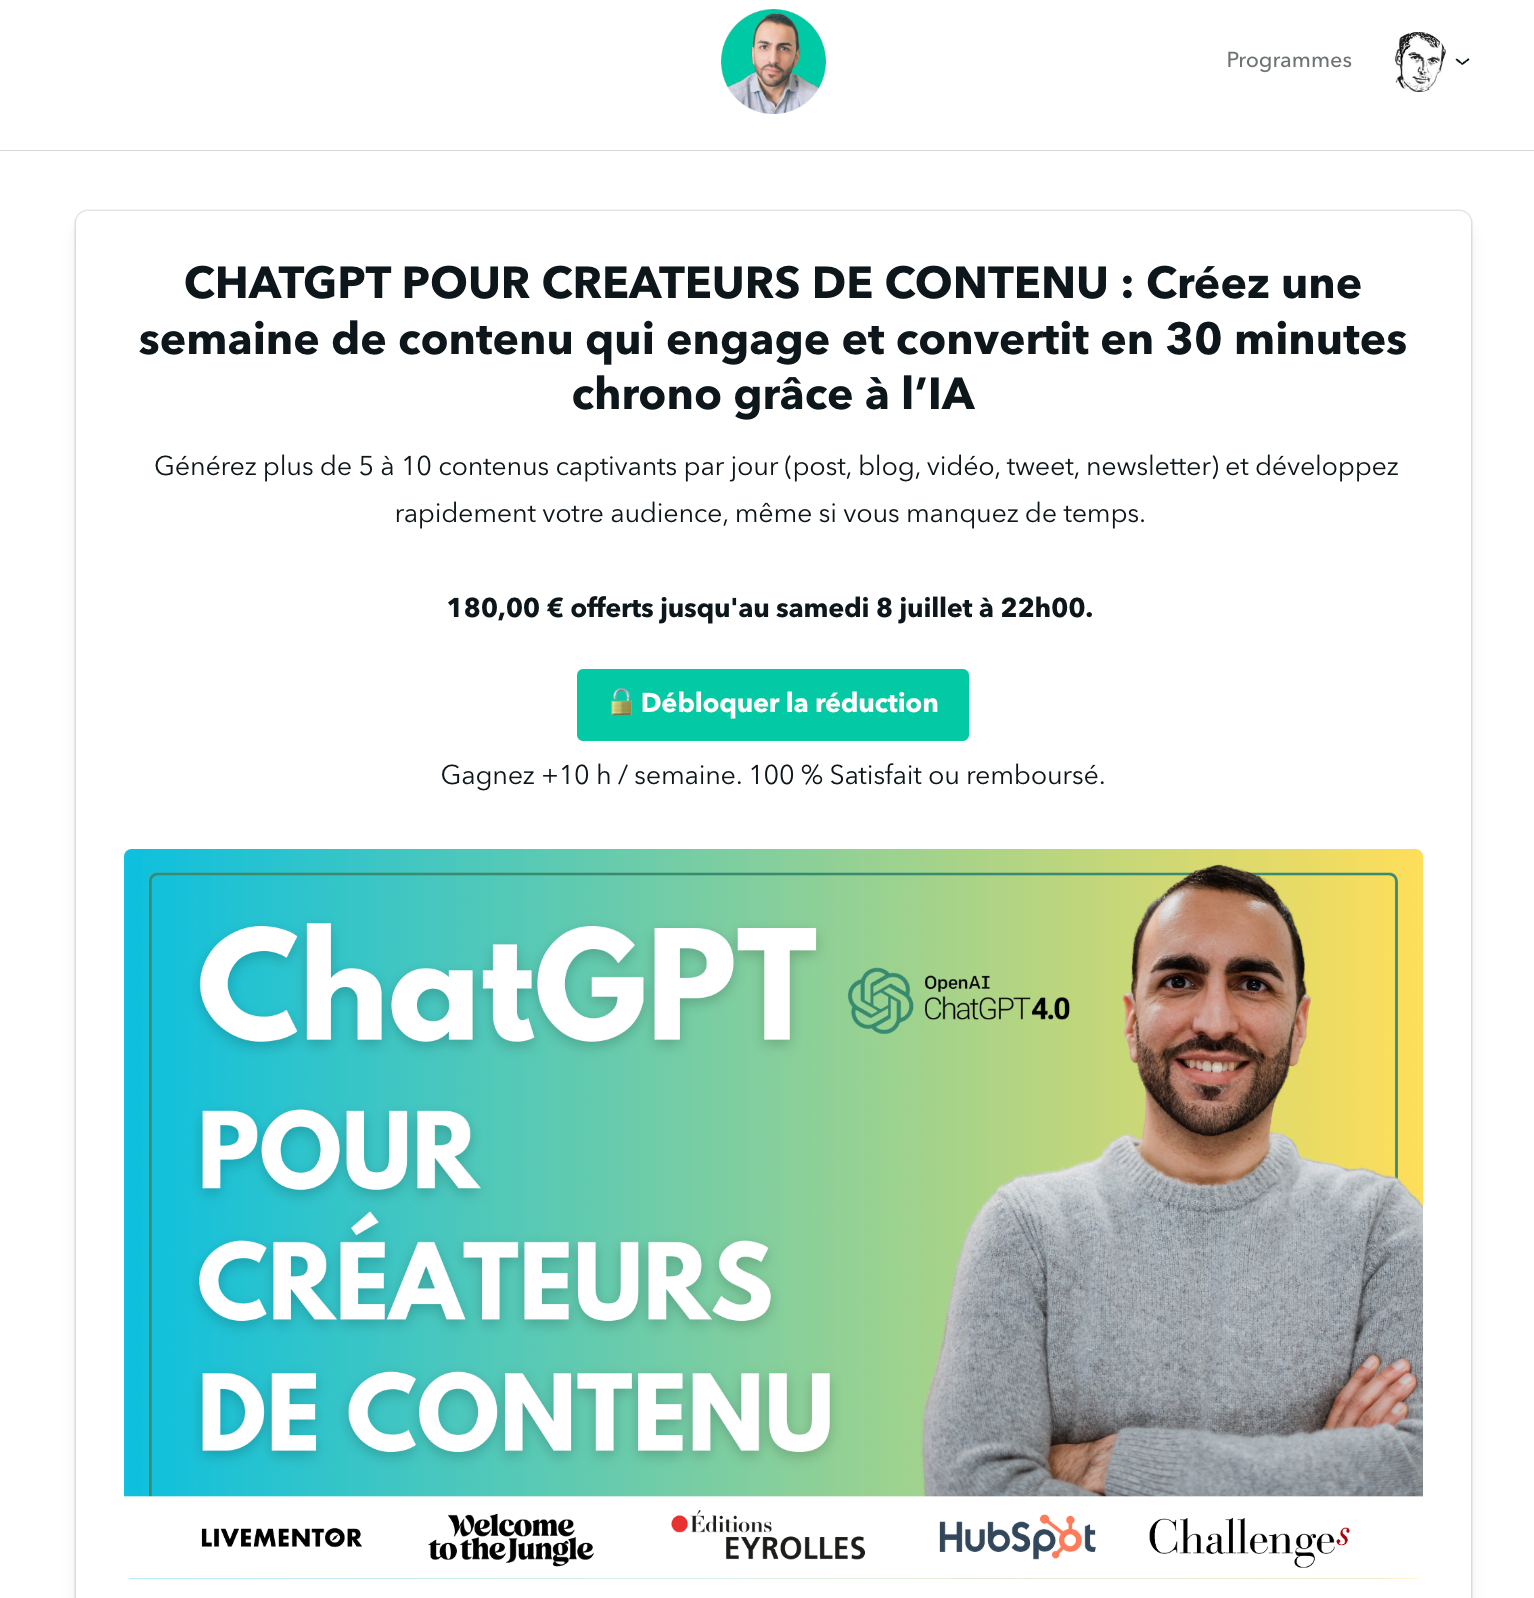 Chat GPT pour créateurs de contenu